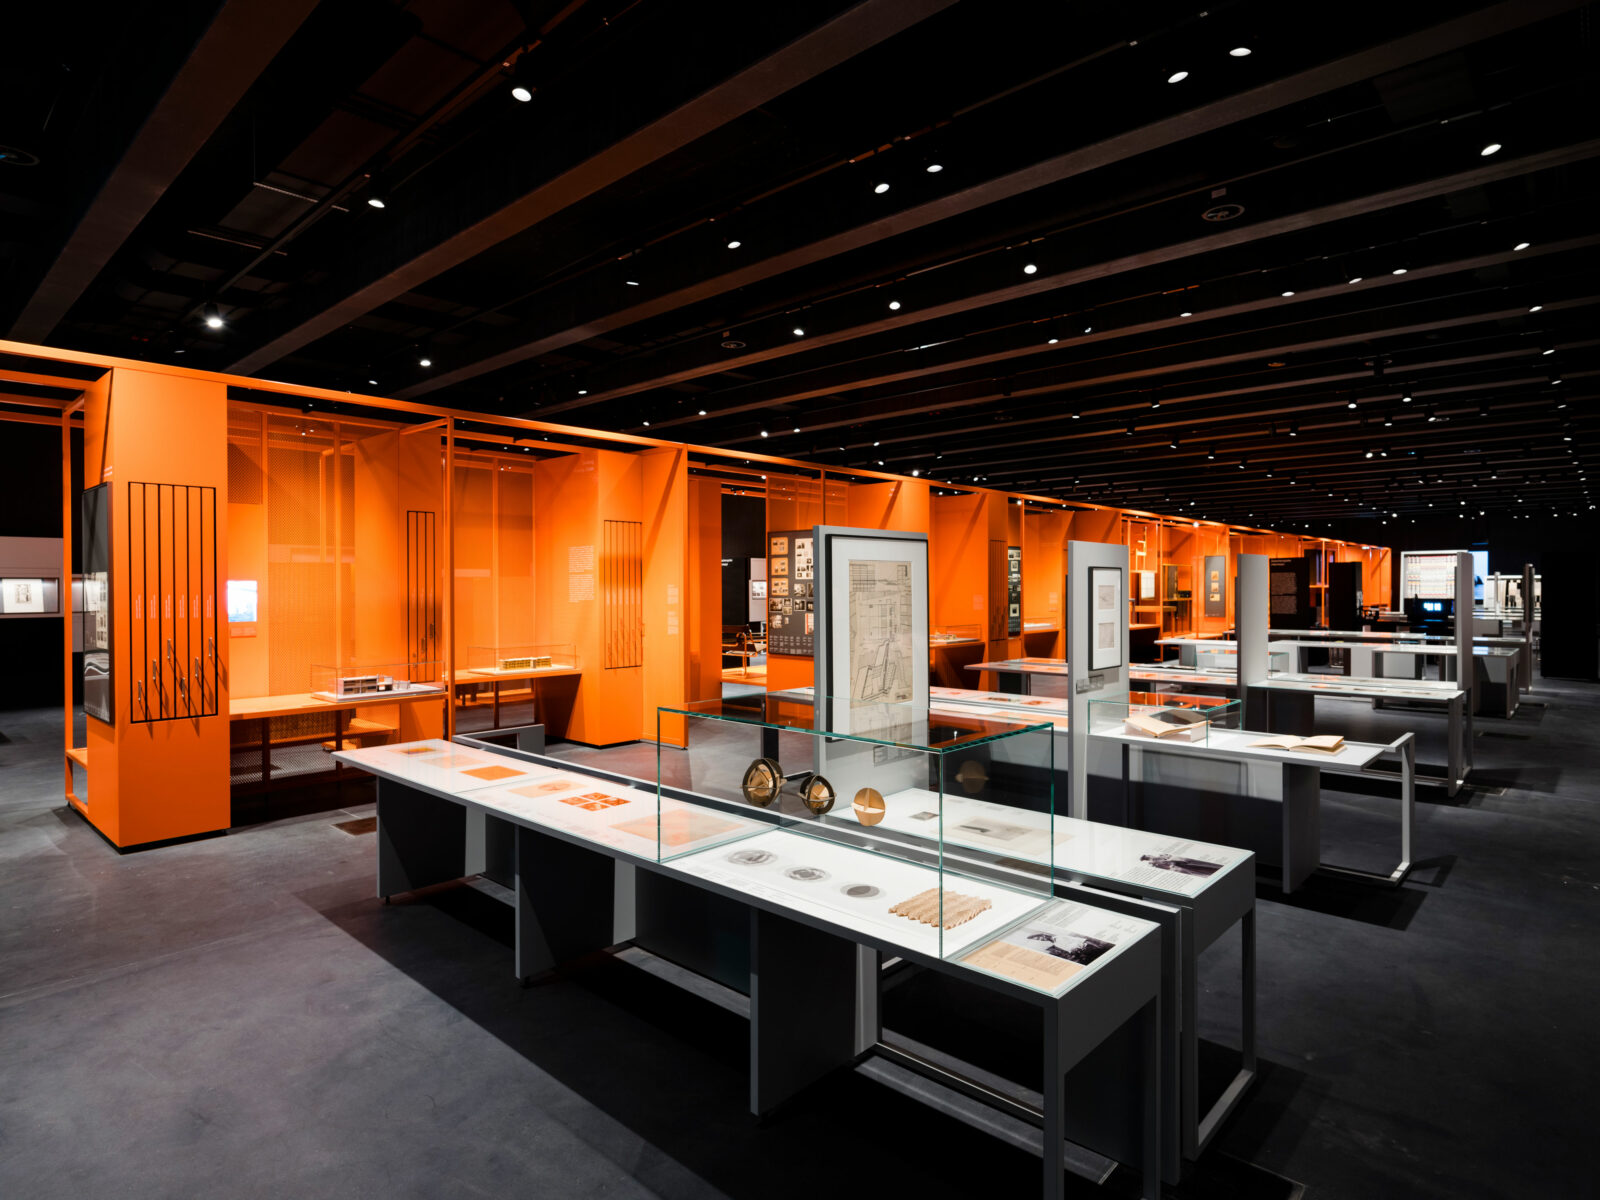 In der Mitte des langgezogenen Ausstellungsraums befindet sich ein orangefarbenes Regal in dem die Produkte des Bauhauses wie in ein Regal eingefügt stehen.